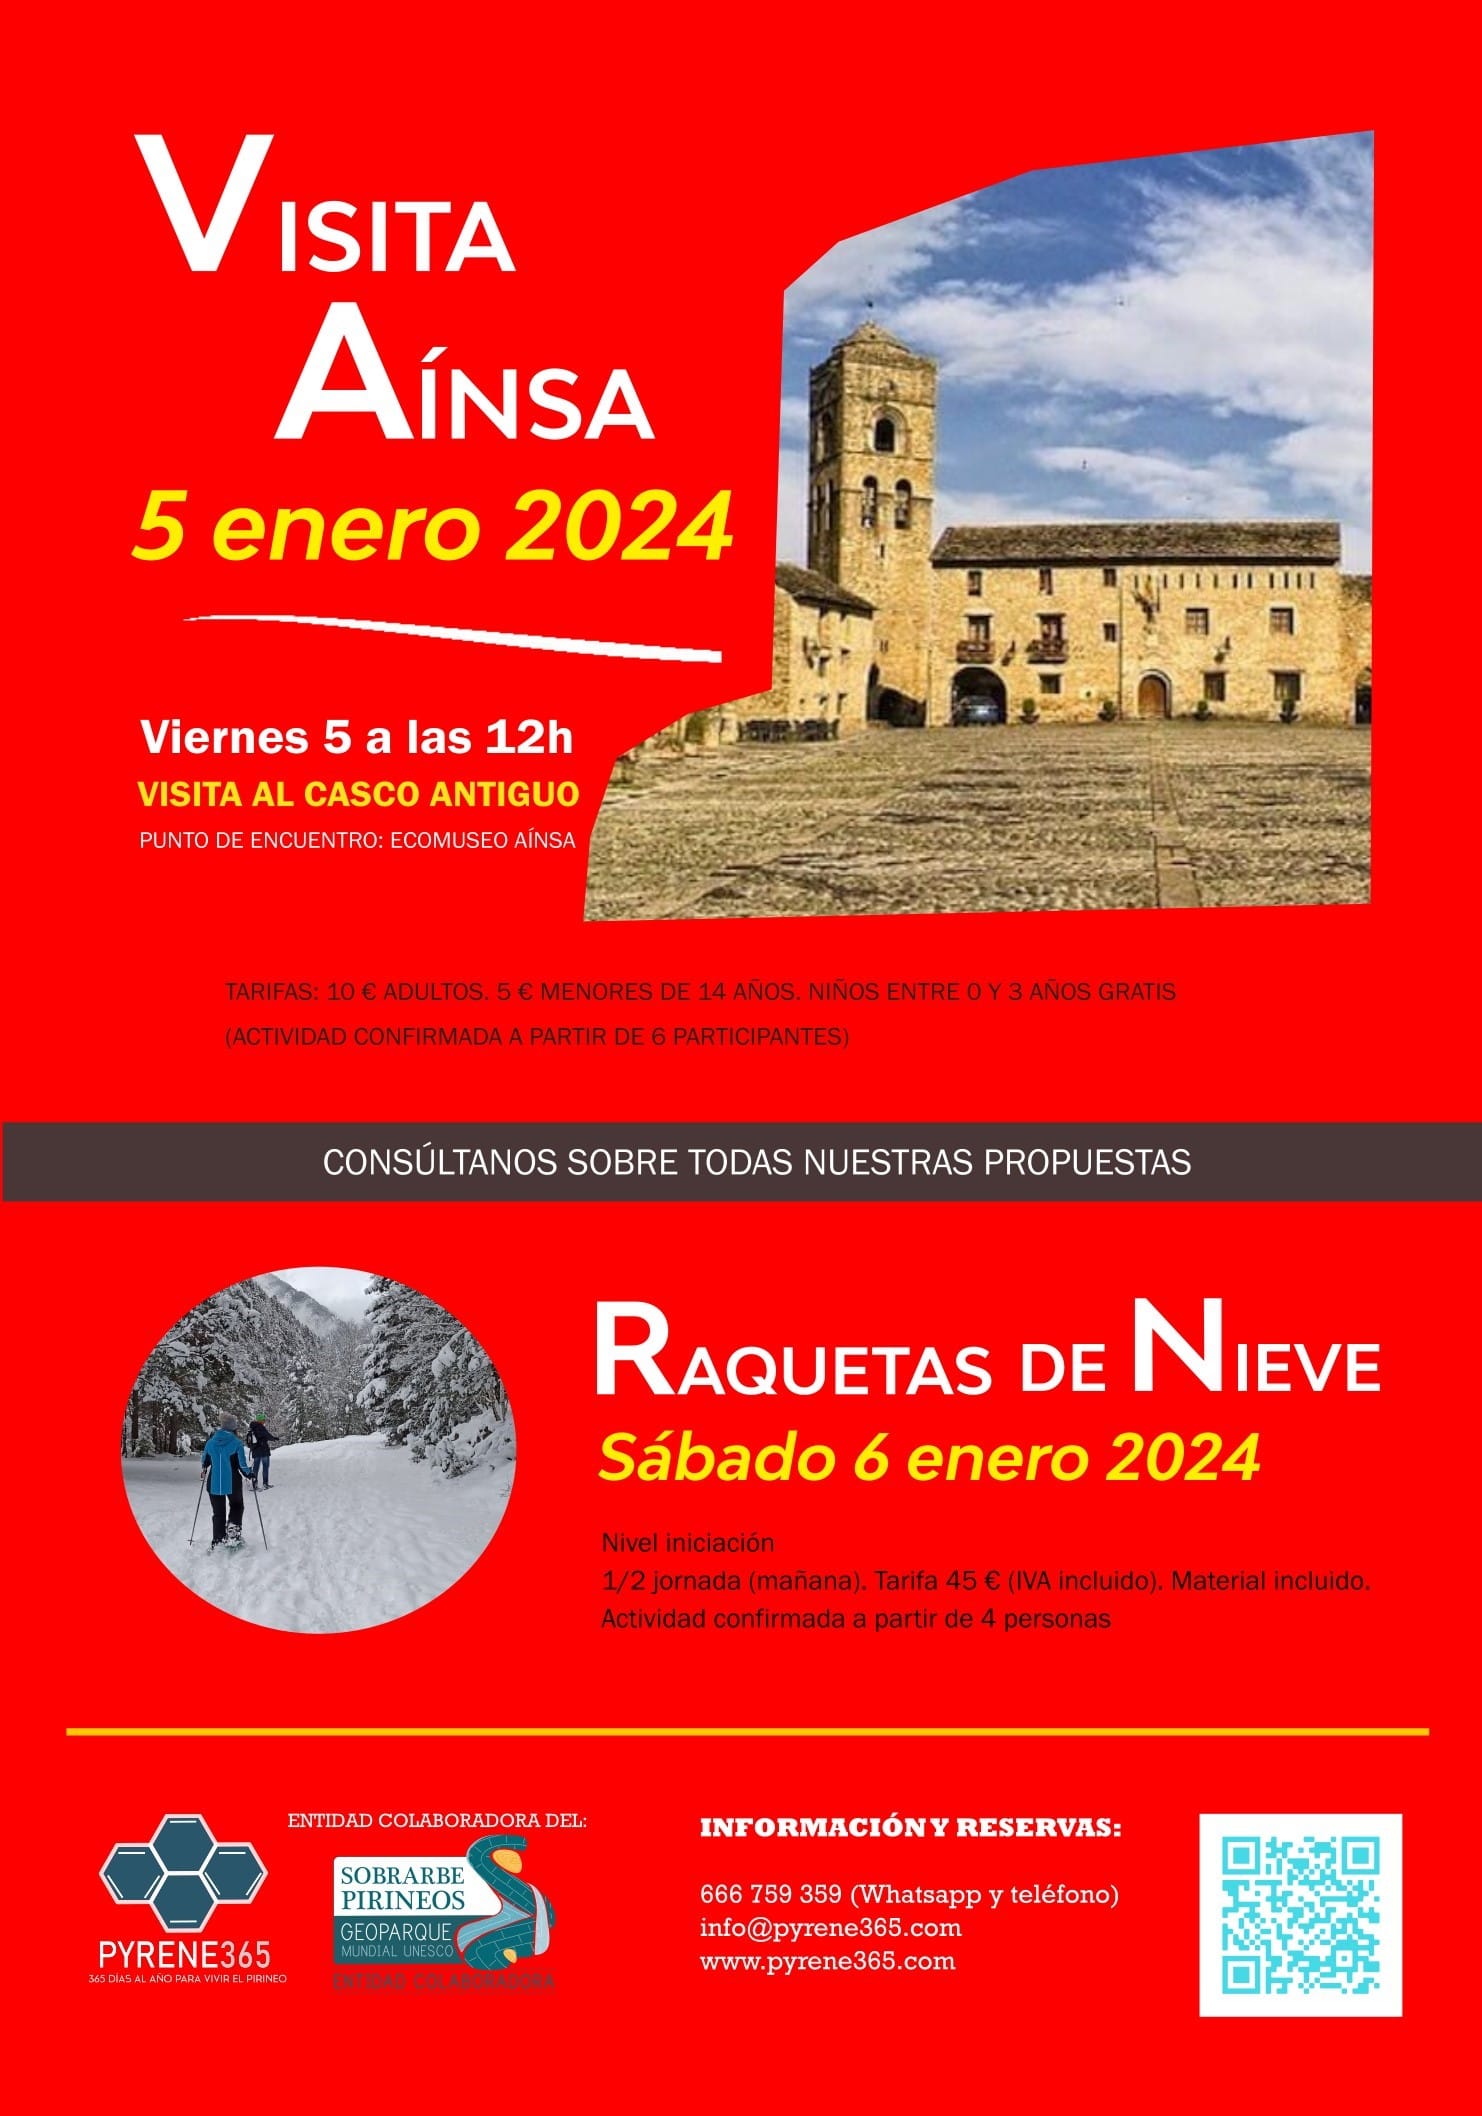 Villa de Ainsa - Sobrarbe Pirineo Visita guiada 5 de enero